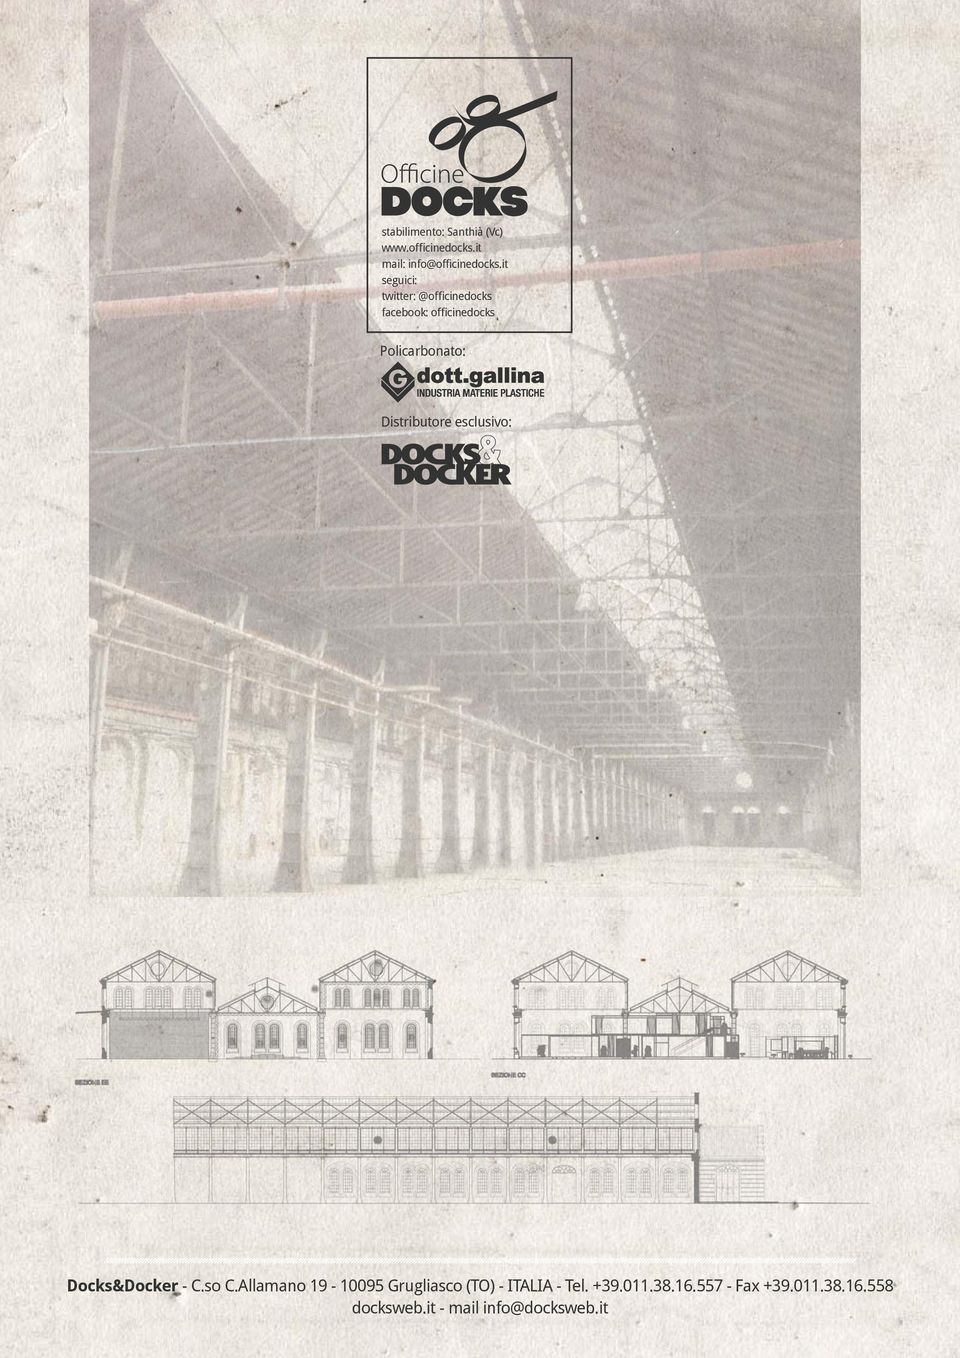 Distributore esclusivo: Docks&Docker - C.so C.